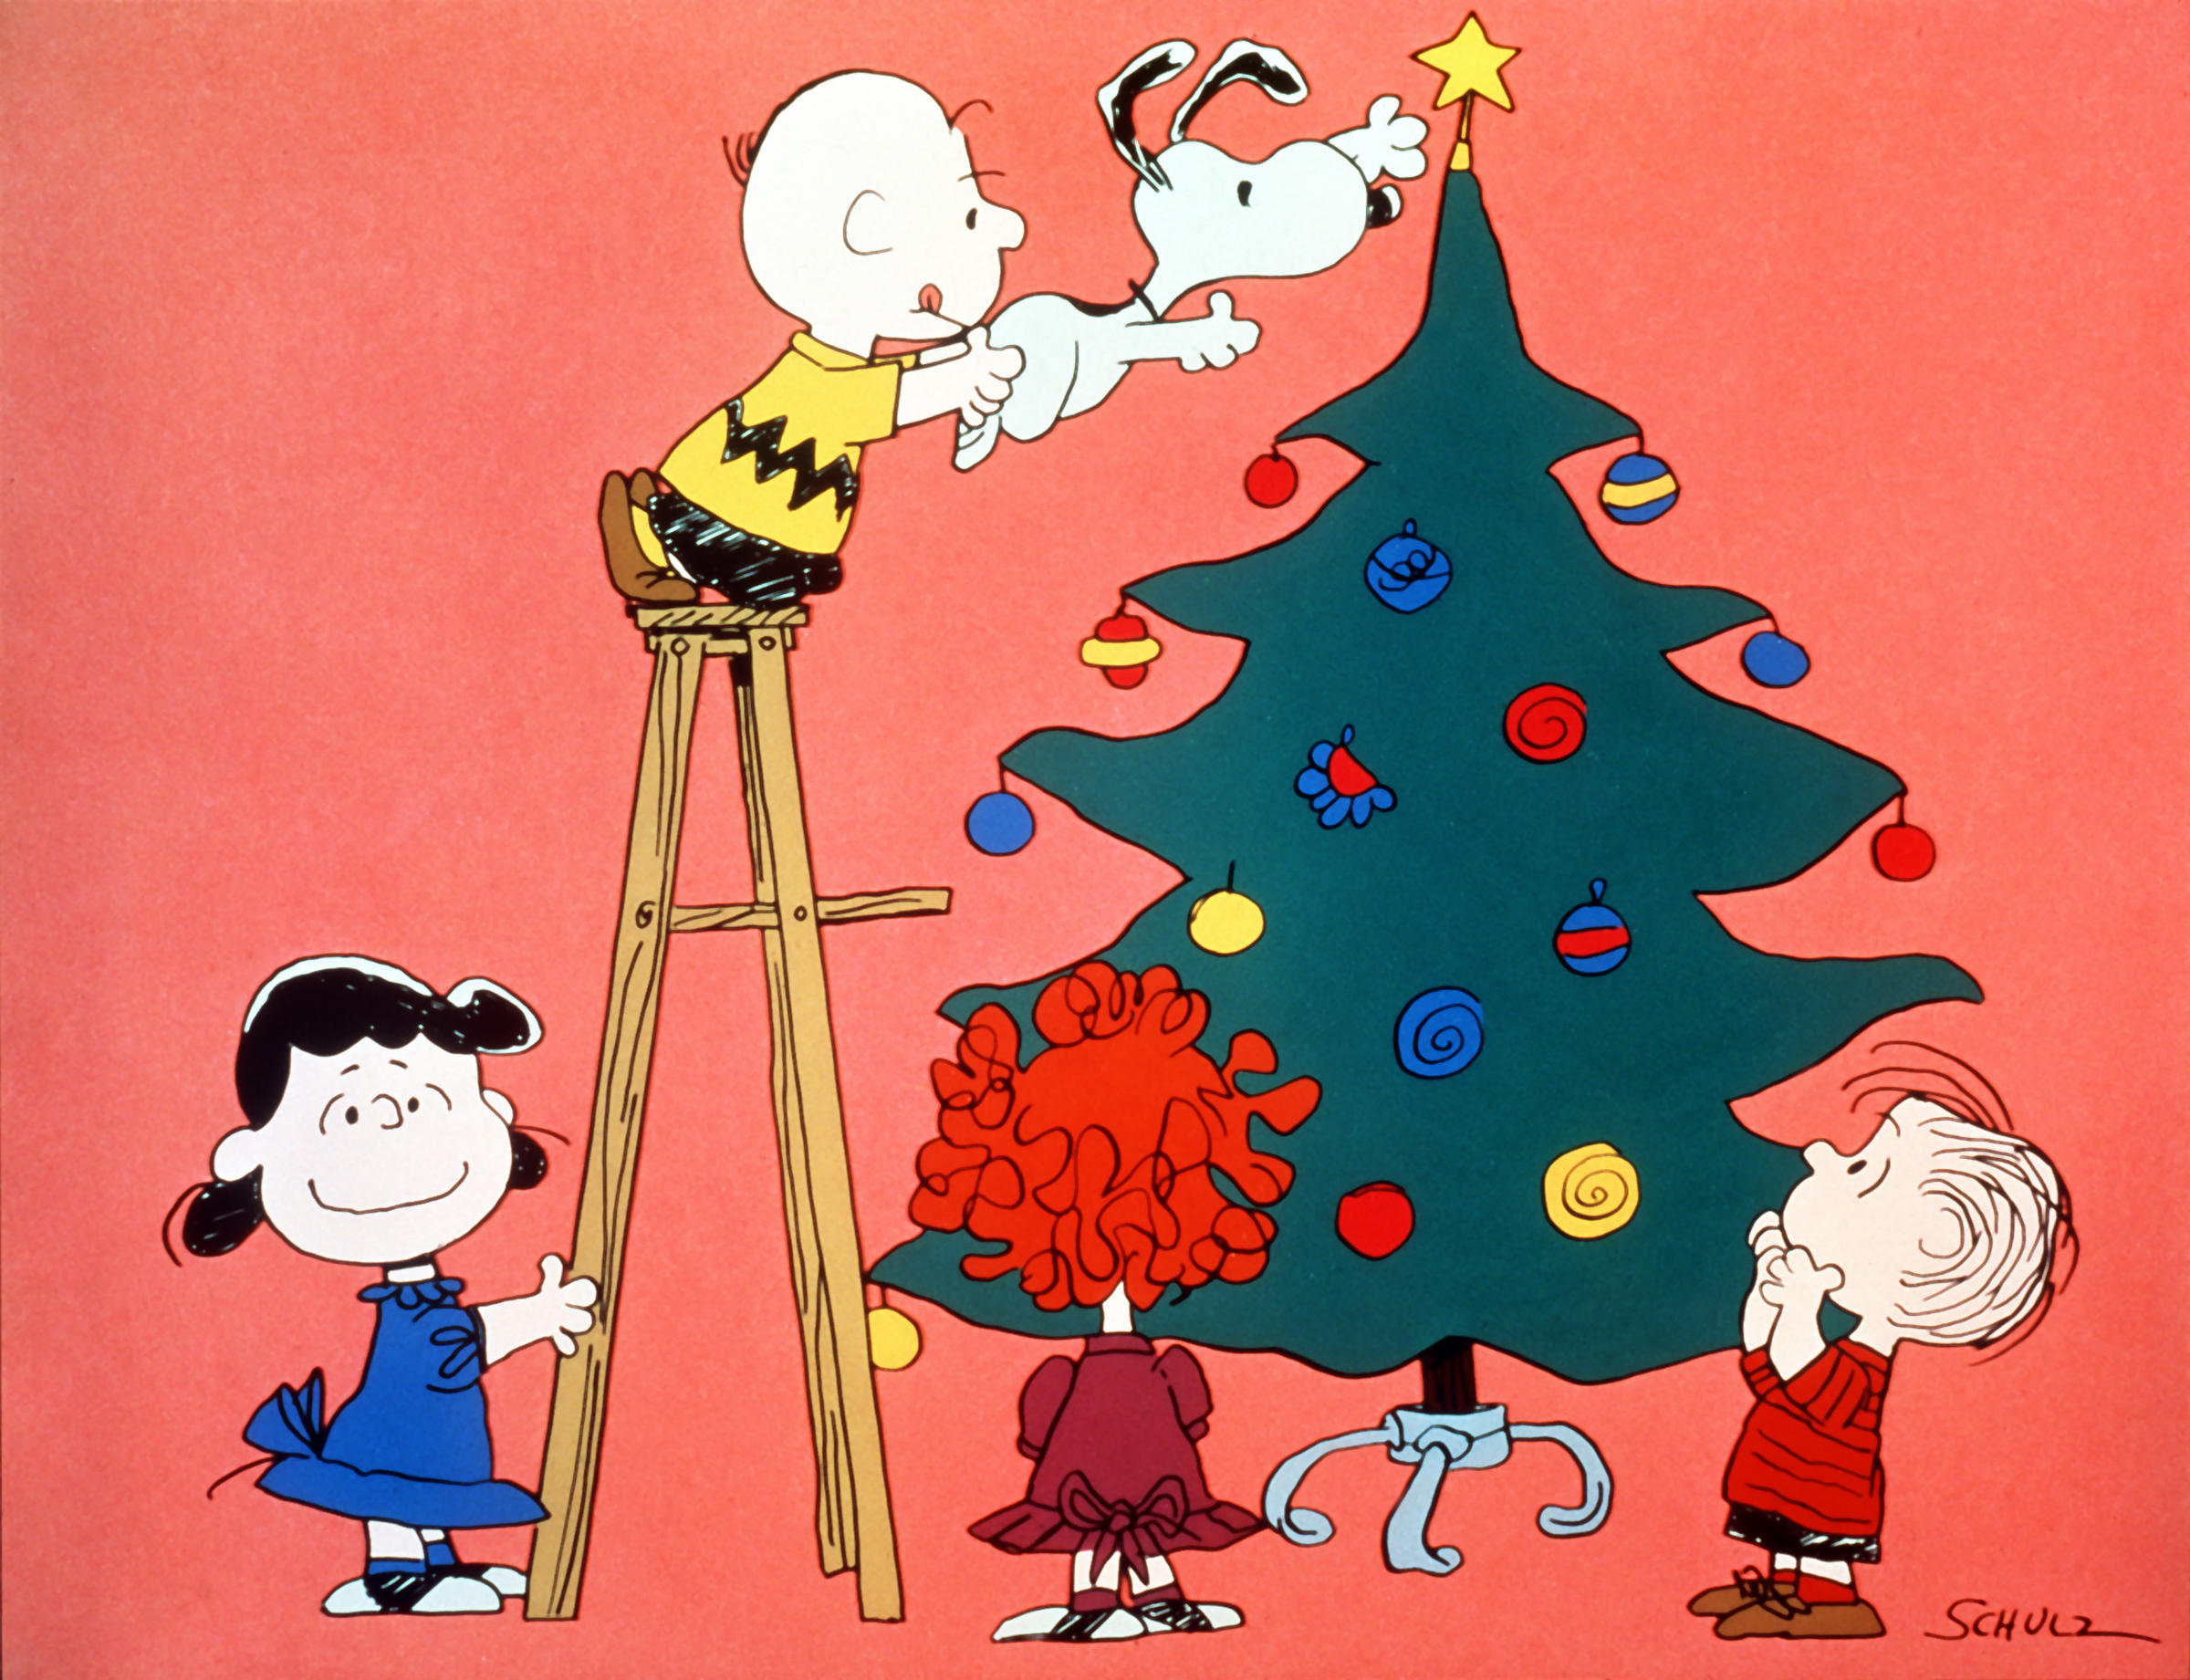 A Charlie Brown Christmas #5